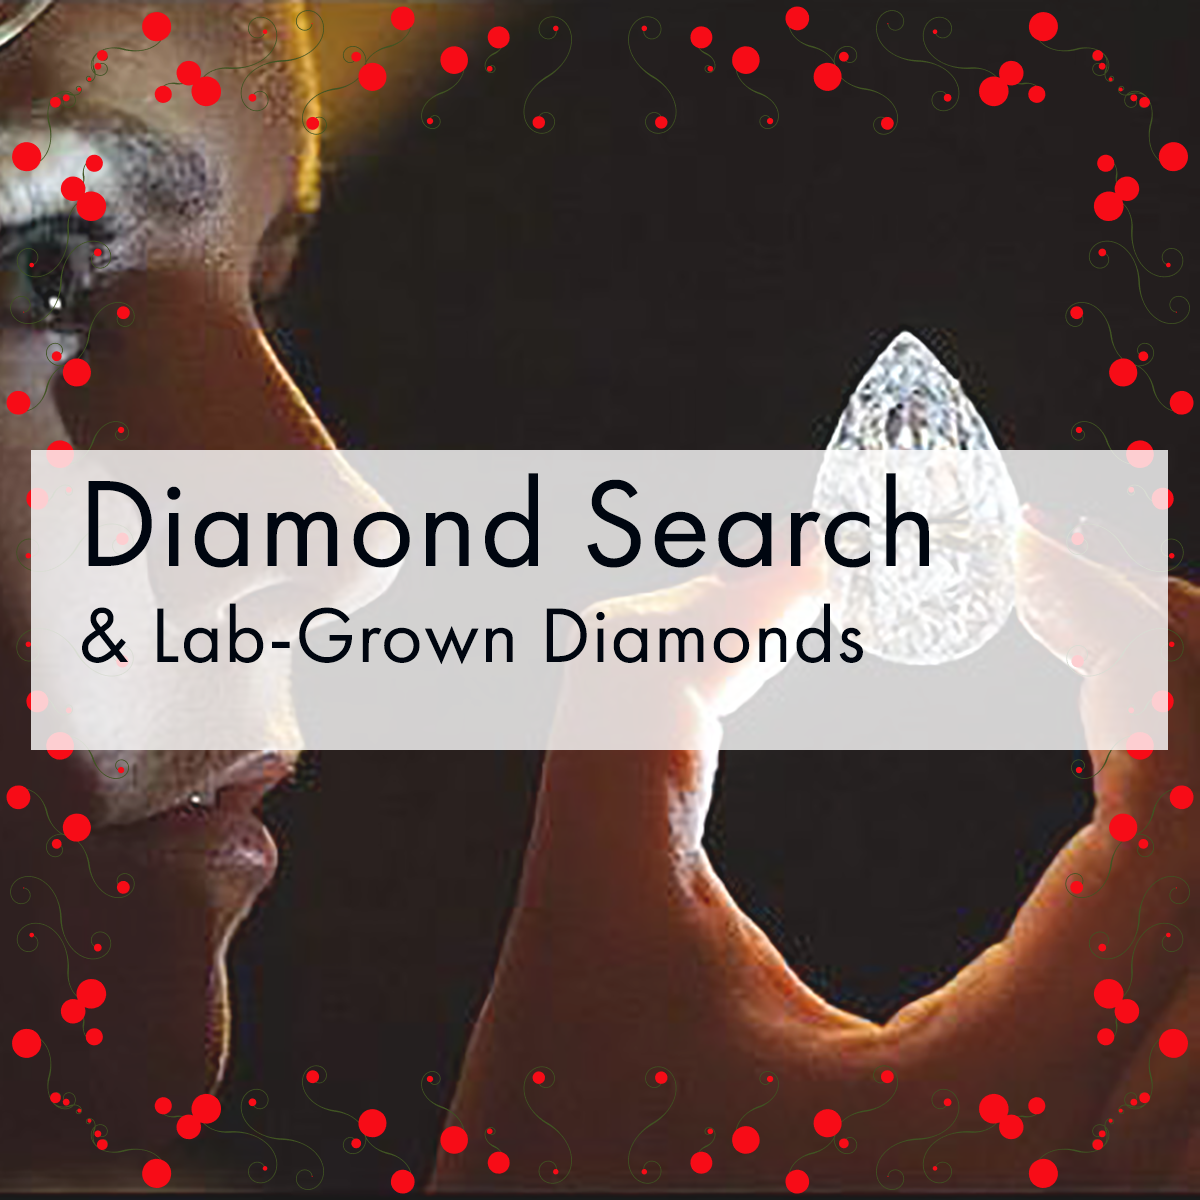 a-diamondSearch2.png